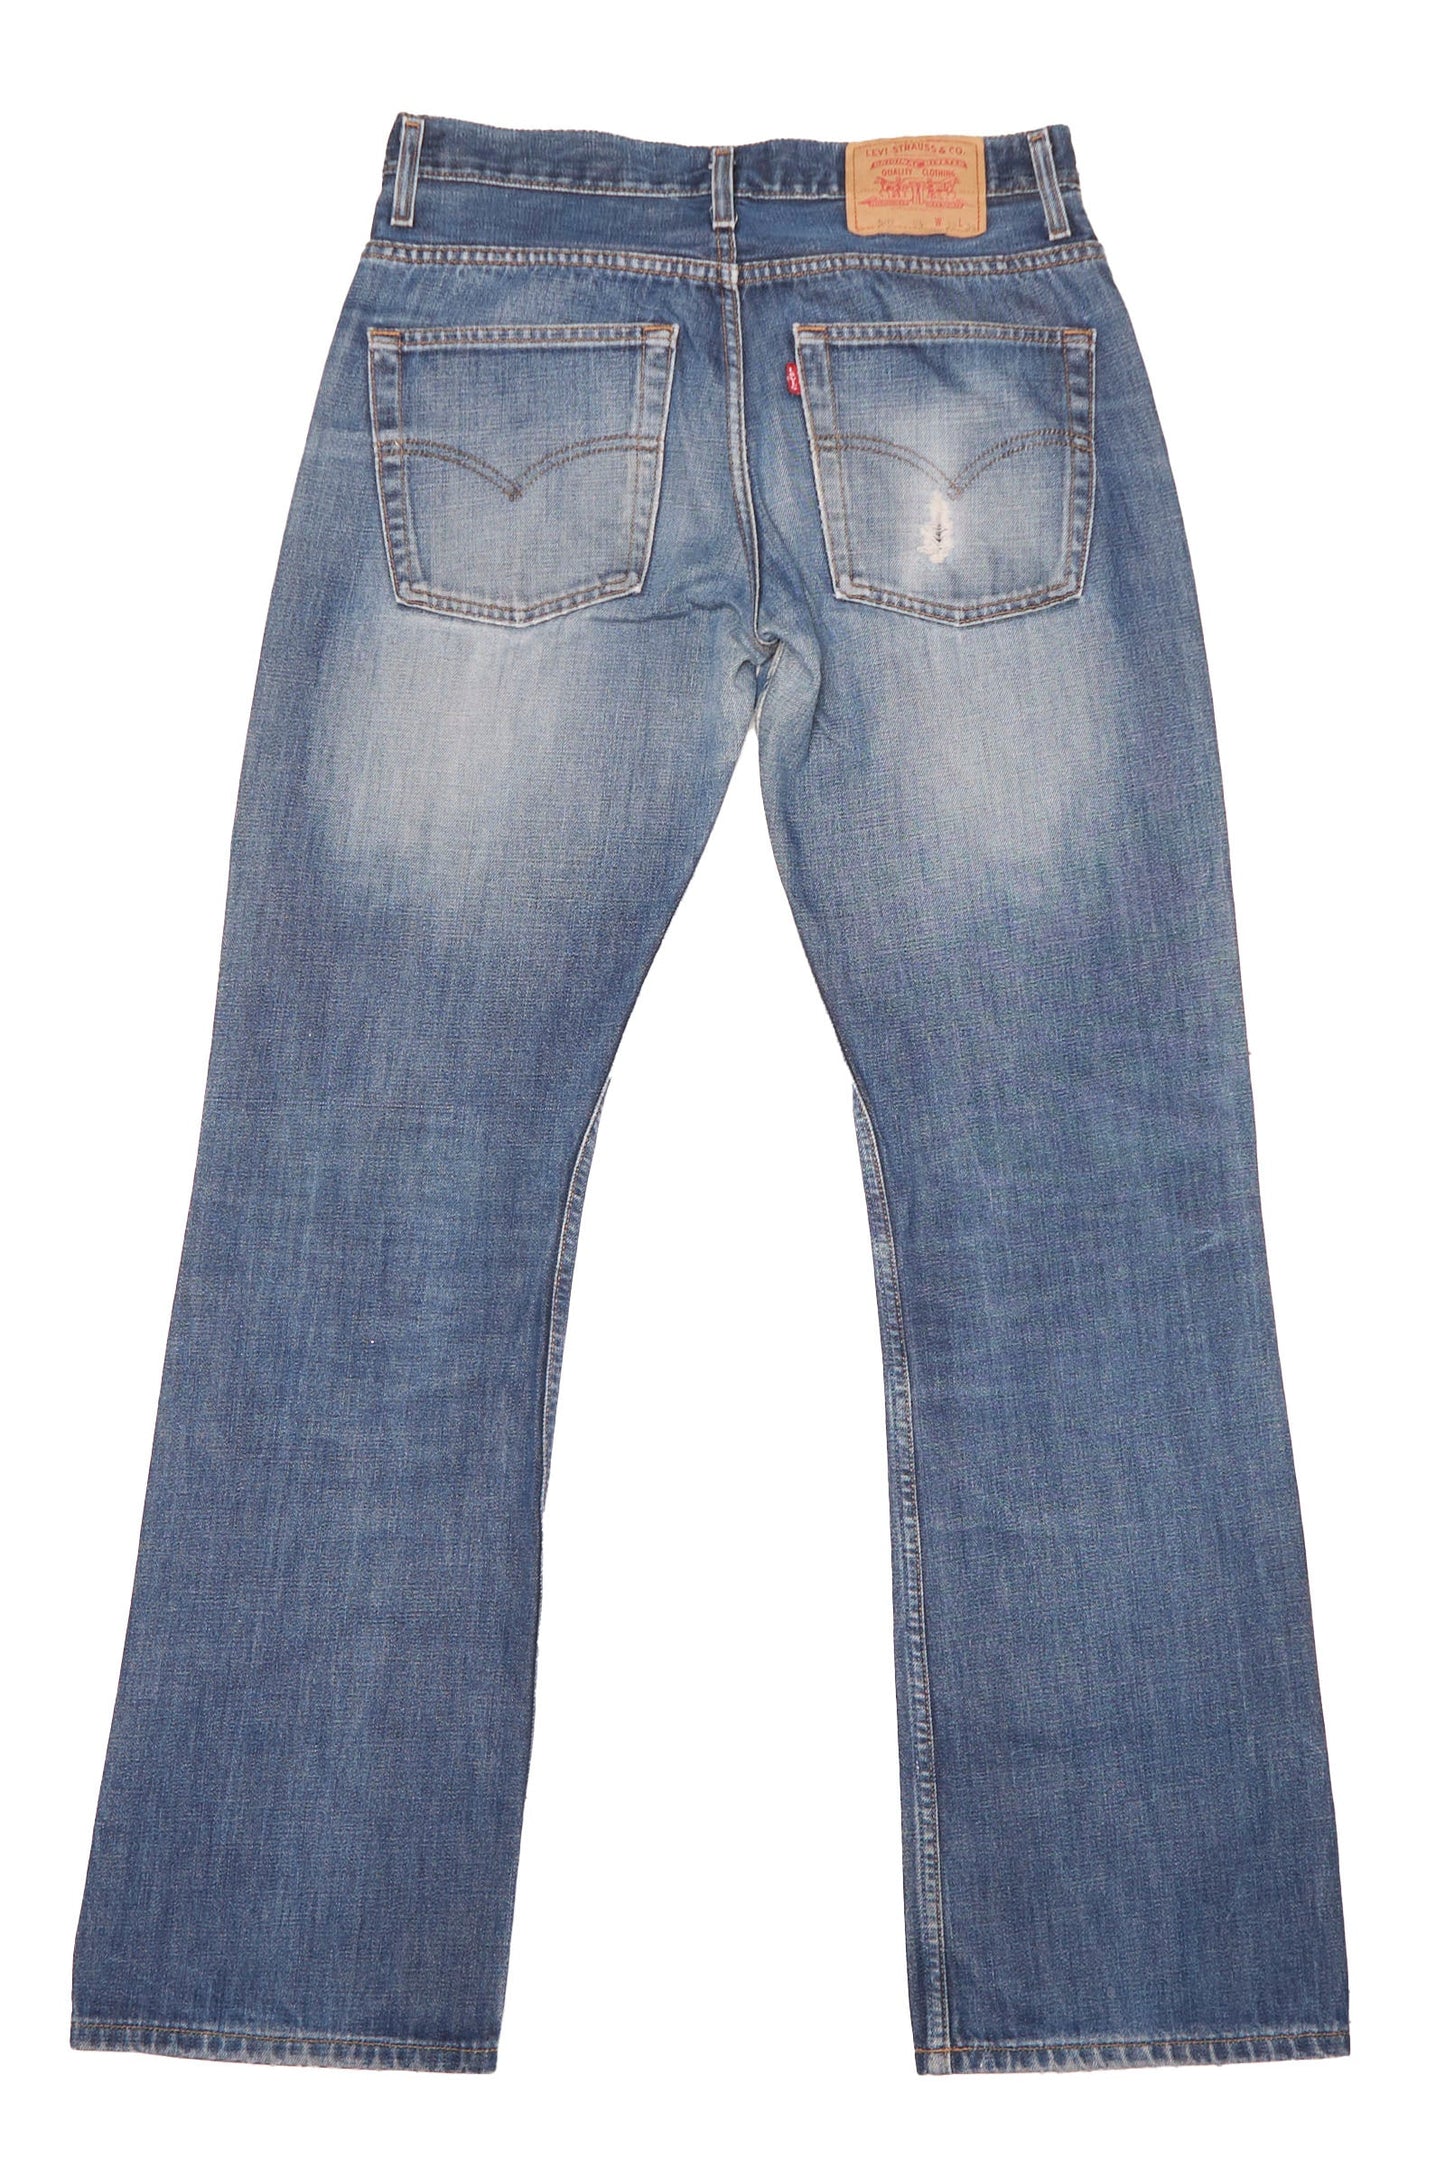 Levis Straight cut Jeans - W32" L34"